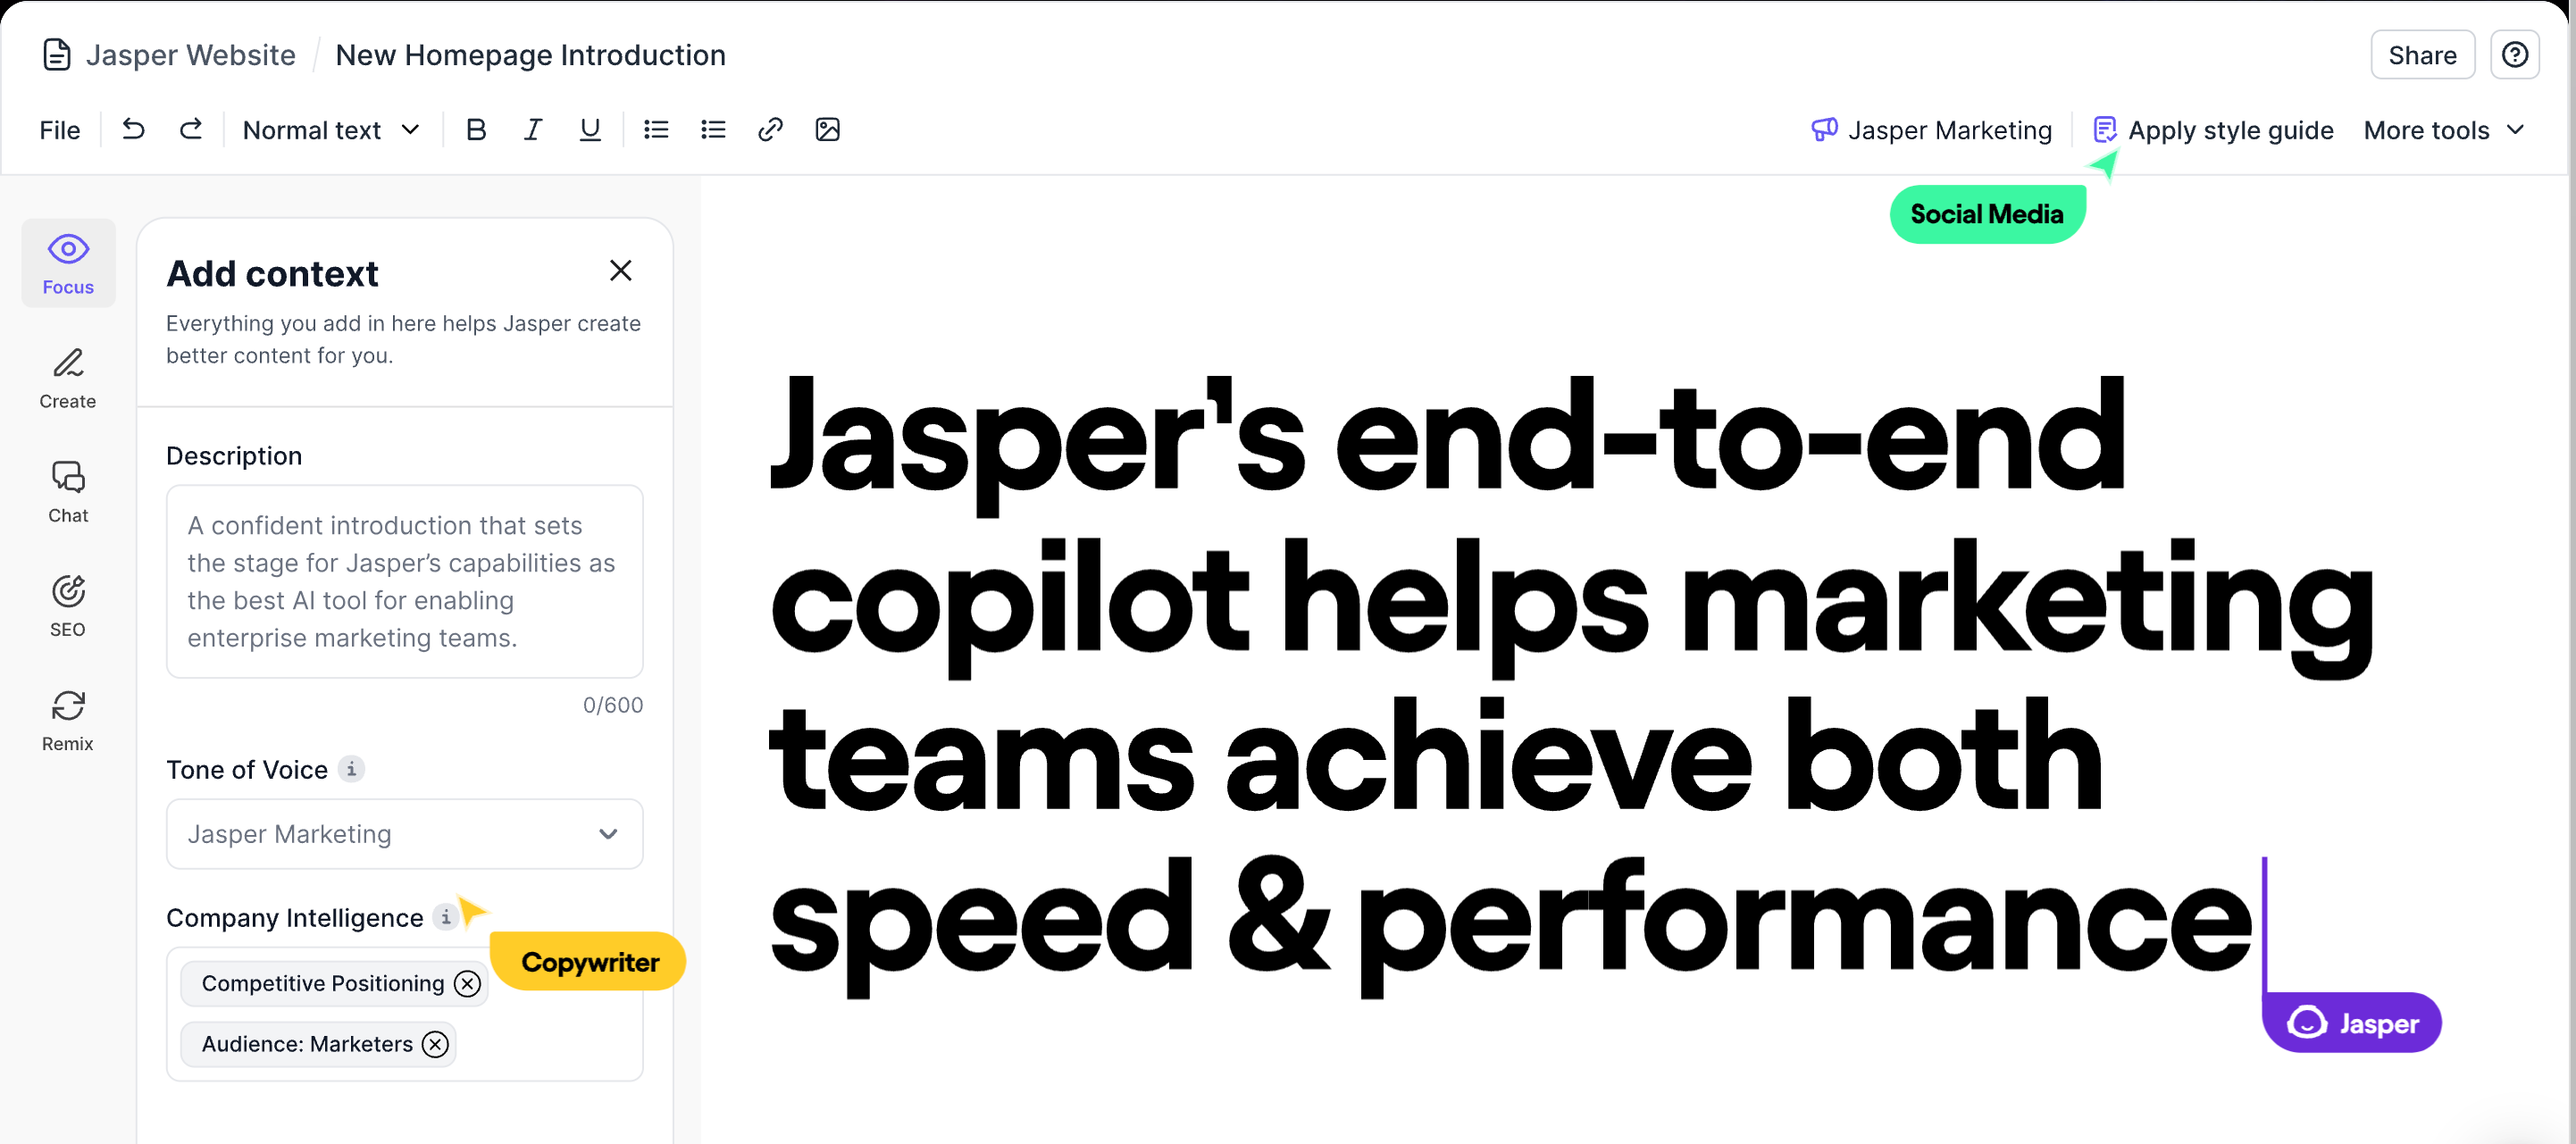 Jasper's user interface